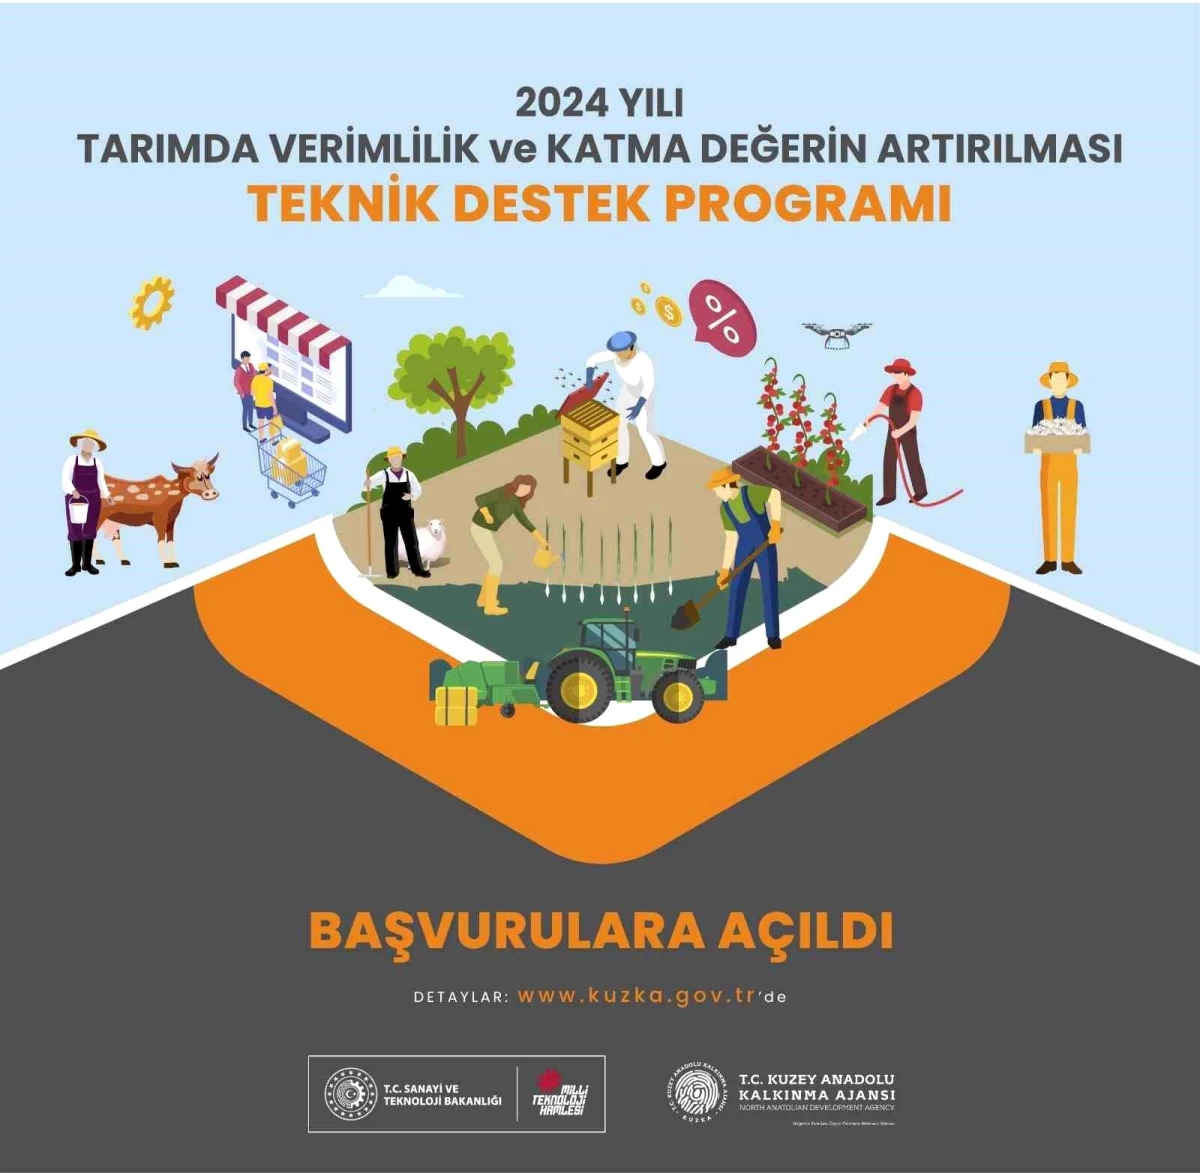 Kuzey Anadolu Kalkınma Ajansı, 2024 Yılı Tarımda Verimlilik ve Katma Değerin Artırılması Teknik Destek Programı\'nı İlan Etti